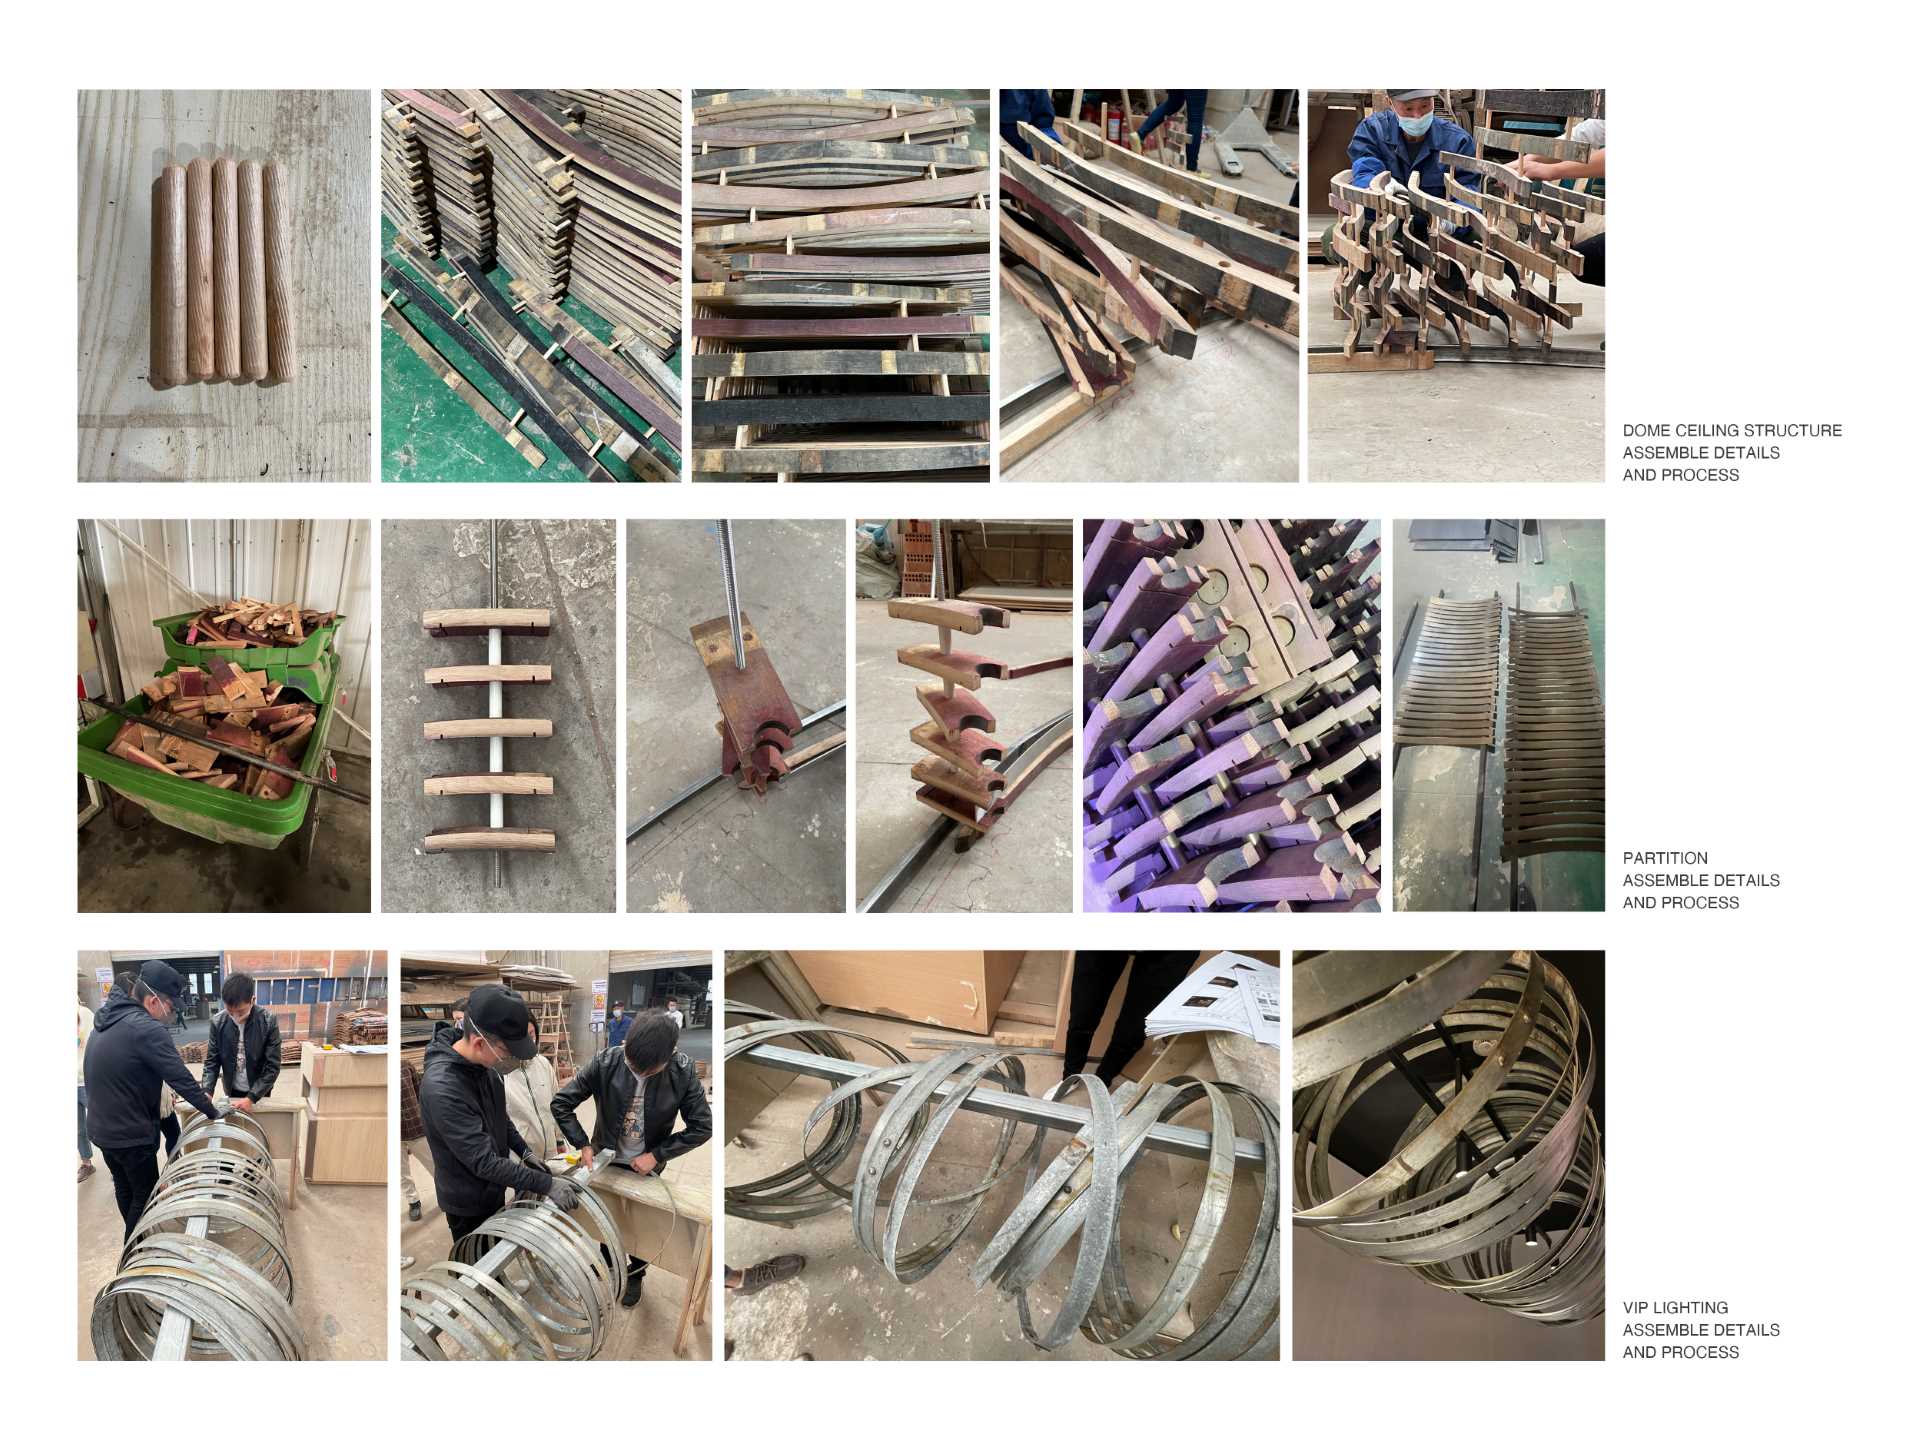 6000 قطعه بشکه ویسکی چوبی دور ریخته شده برای ساخت این نوار مدرن بازیافت شد.